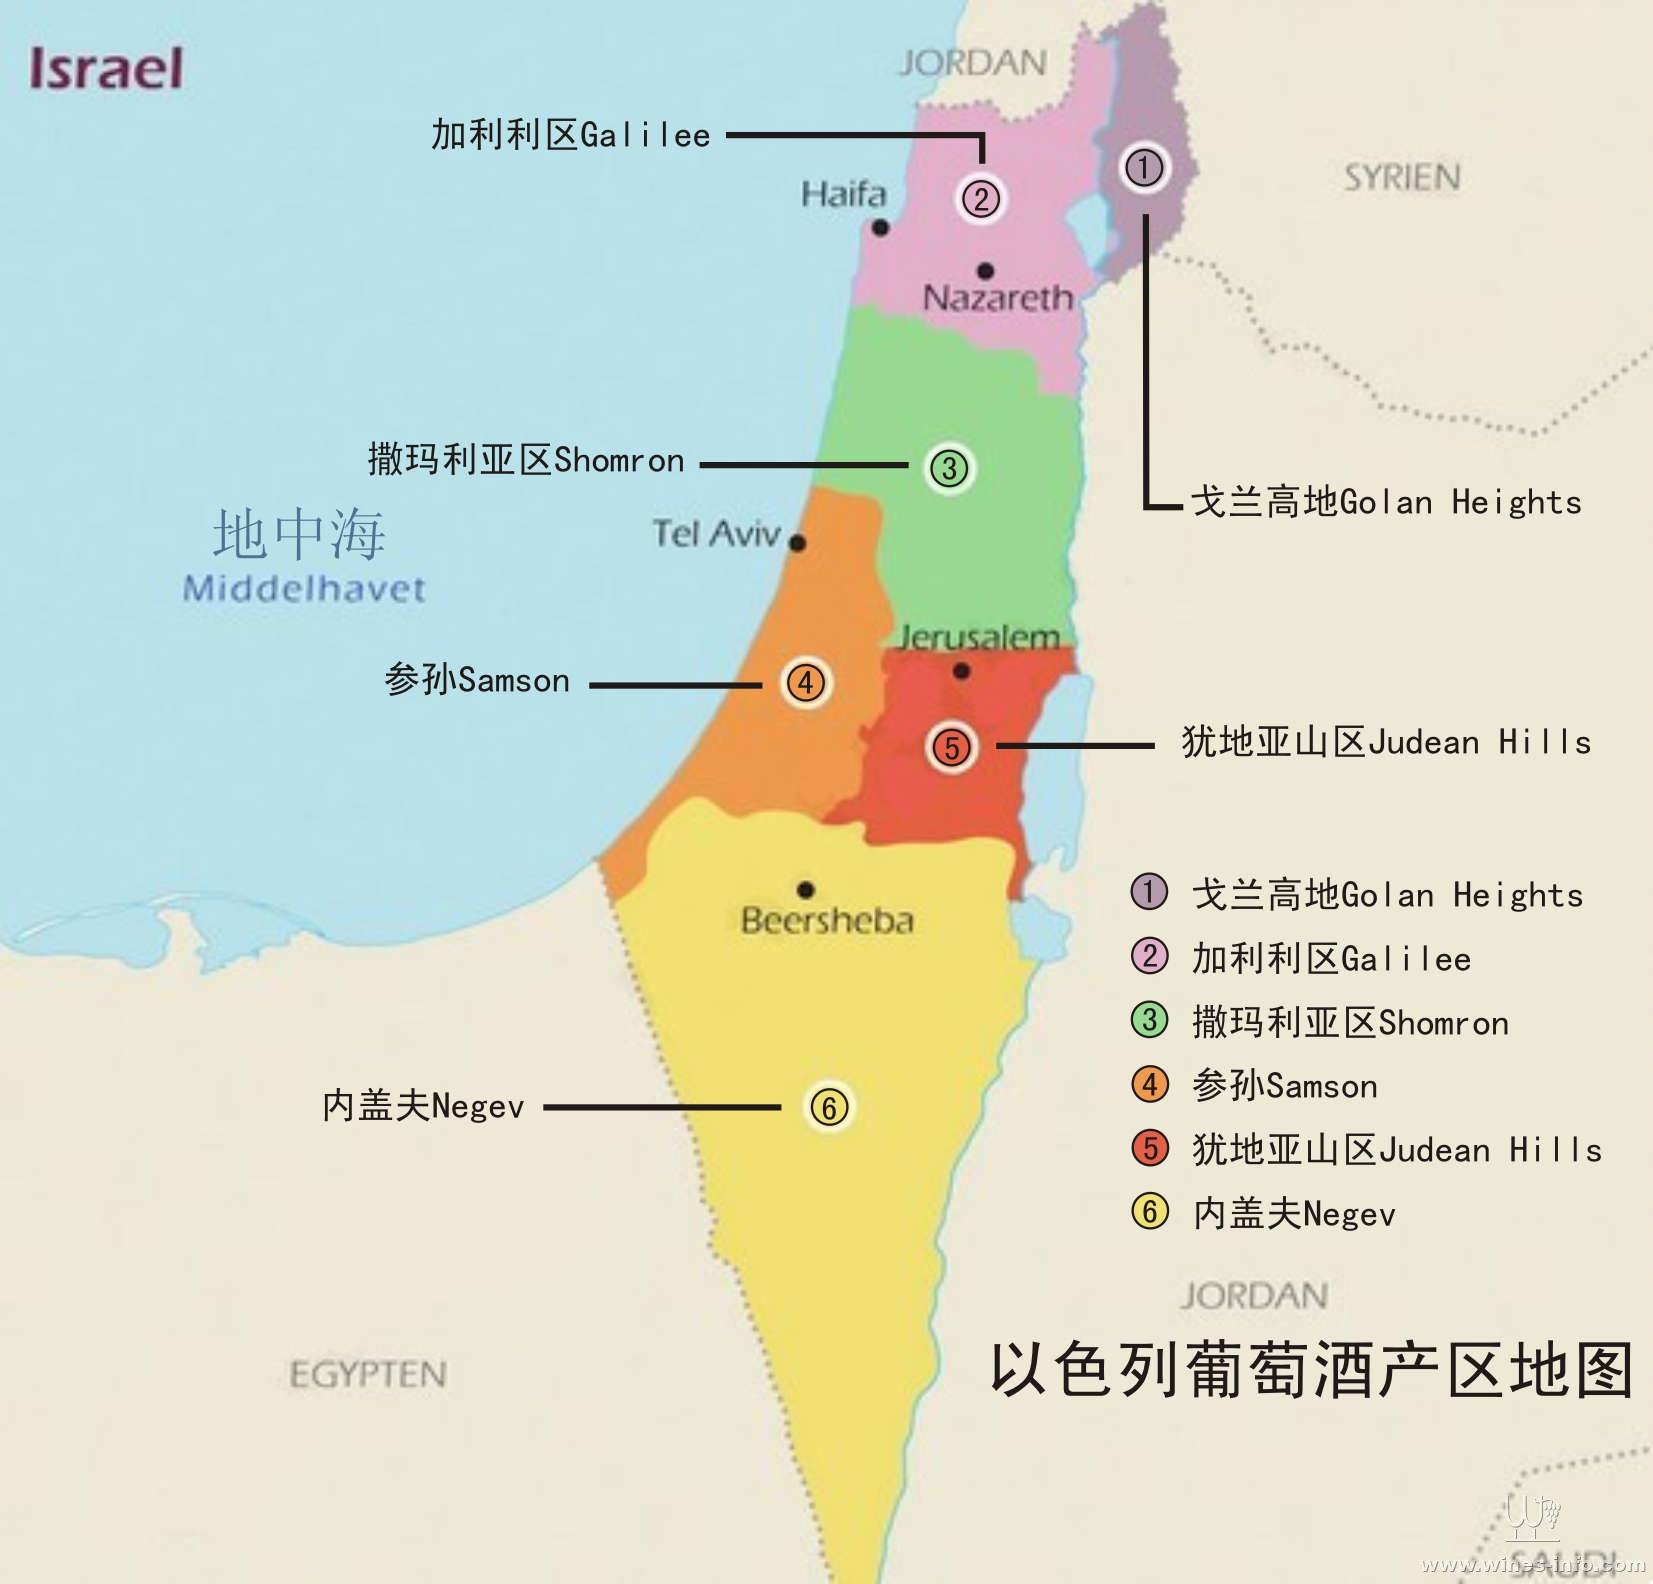 (点击查看大图)   地理位置   以色列位于亚洲西部,是亚,非,欧三大洲